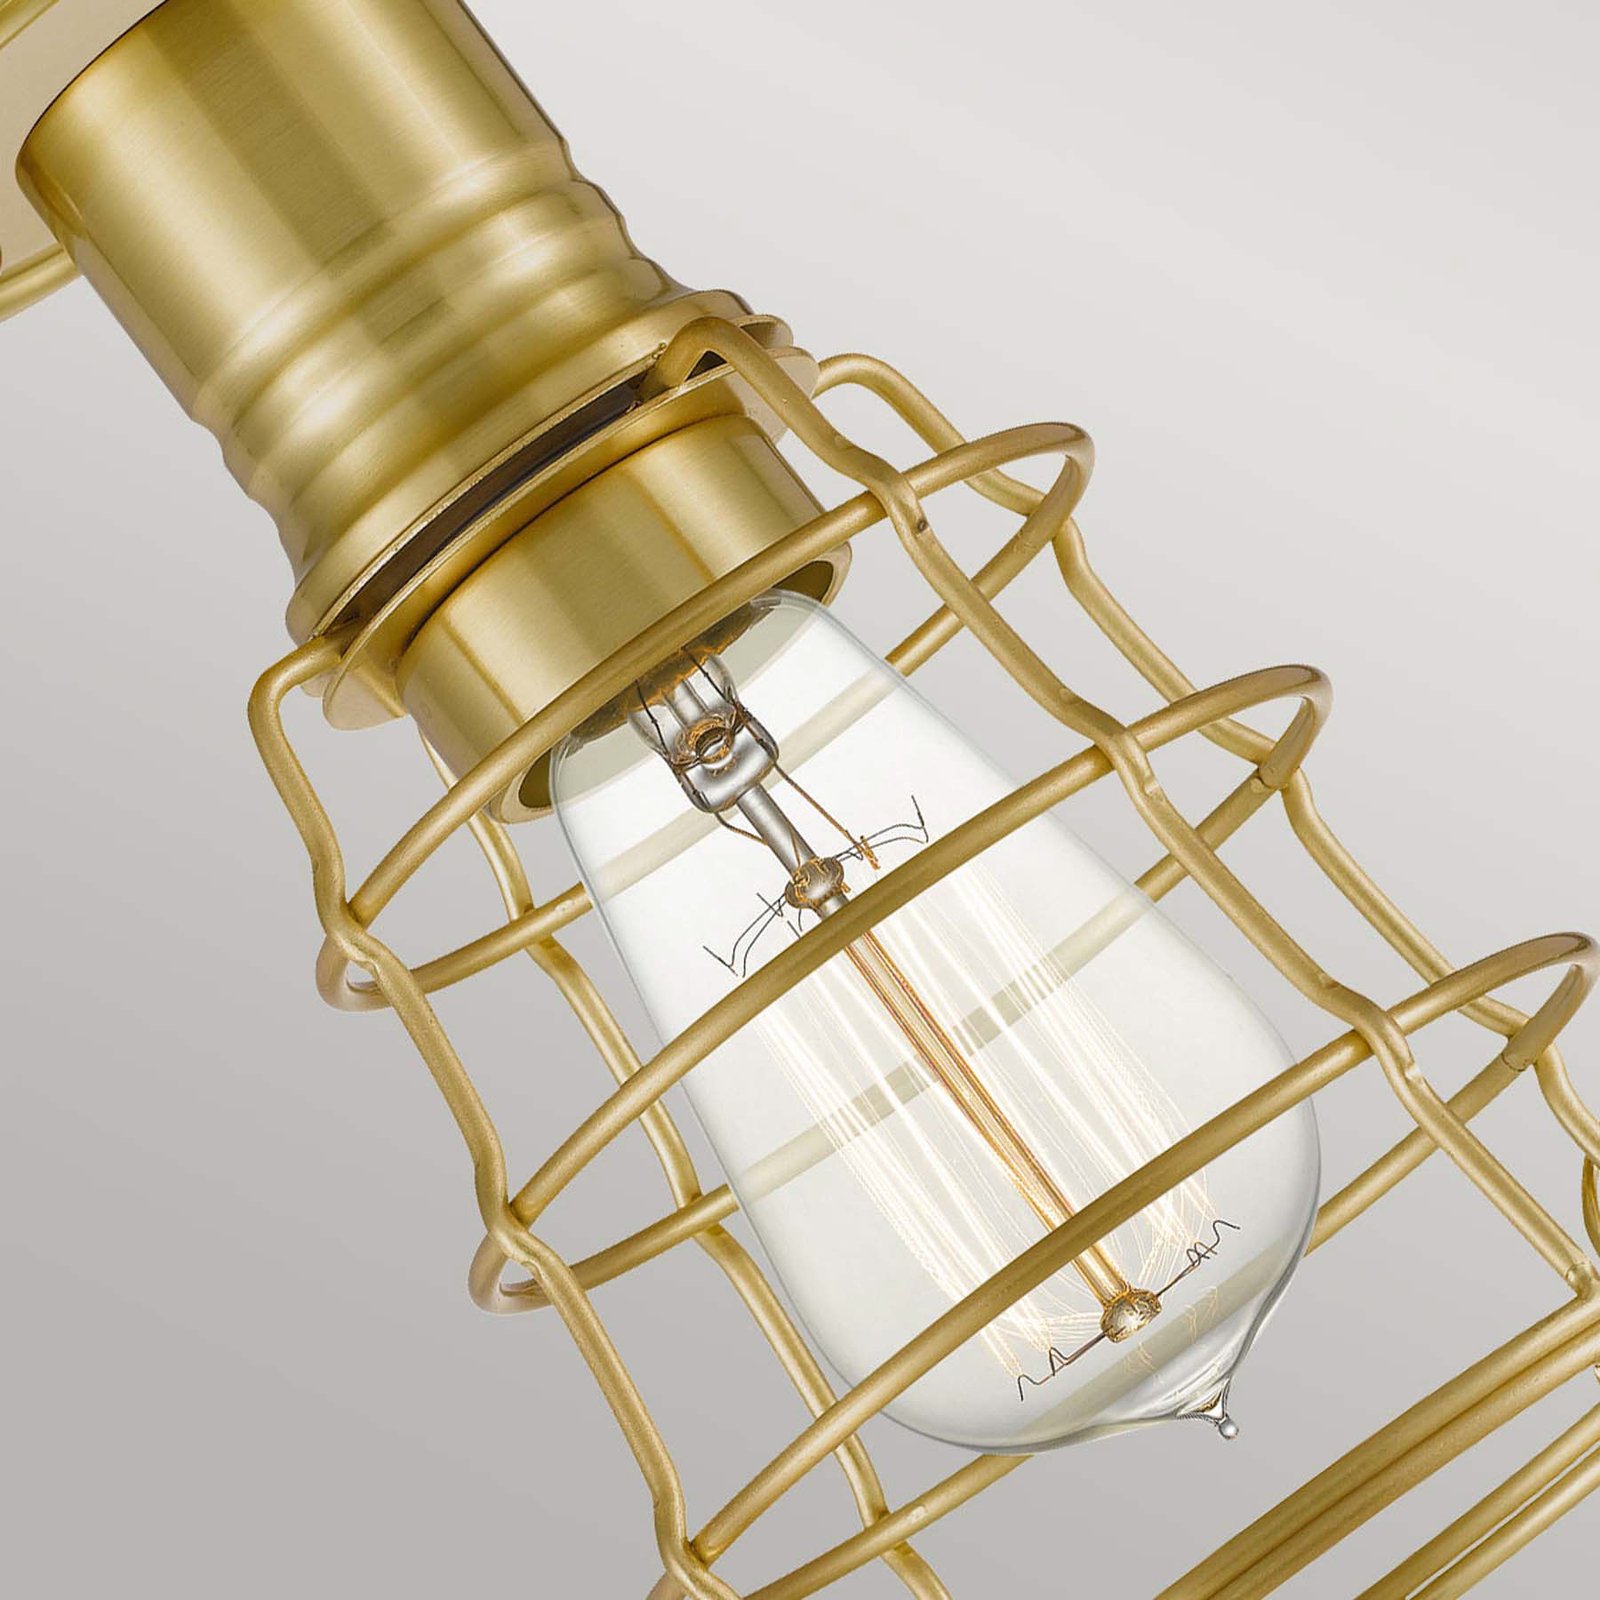 Lampa sufitowa Mixon z metalową klatką, szczotkowany mosiądz